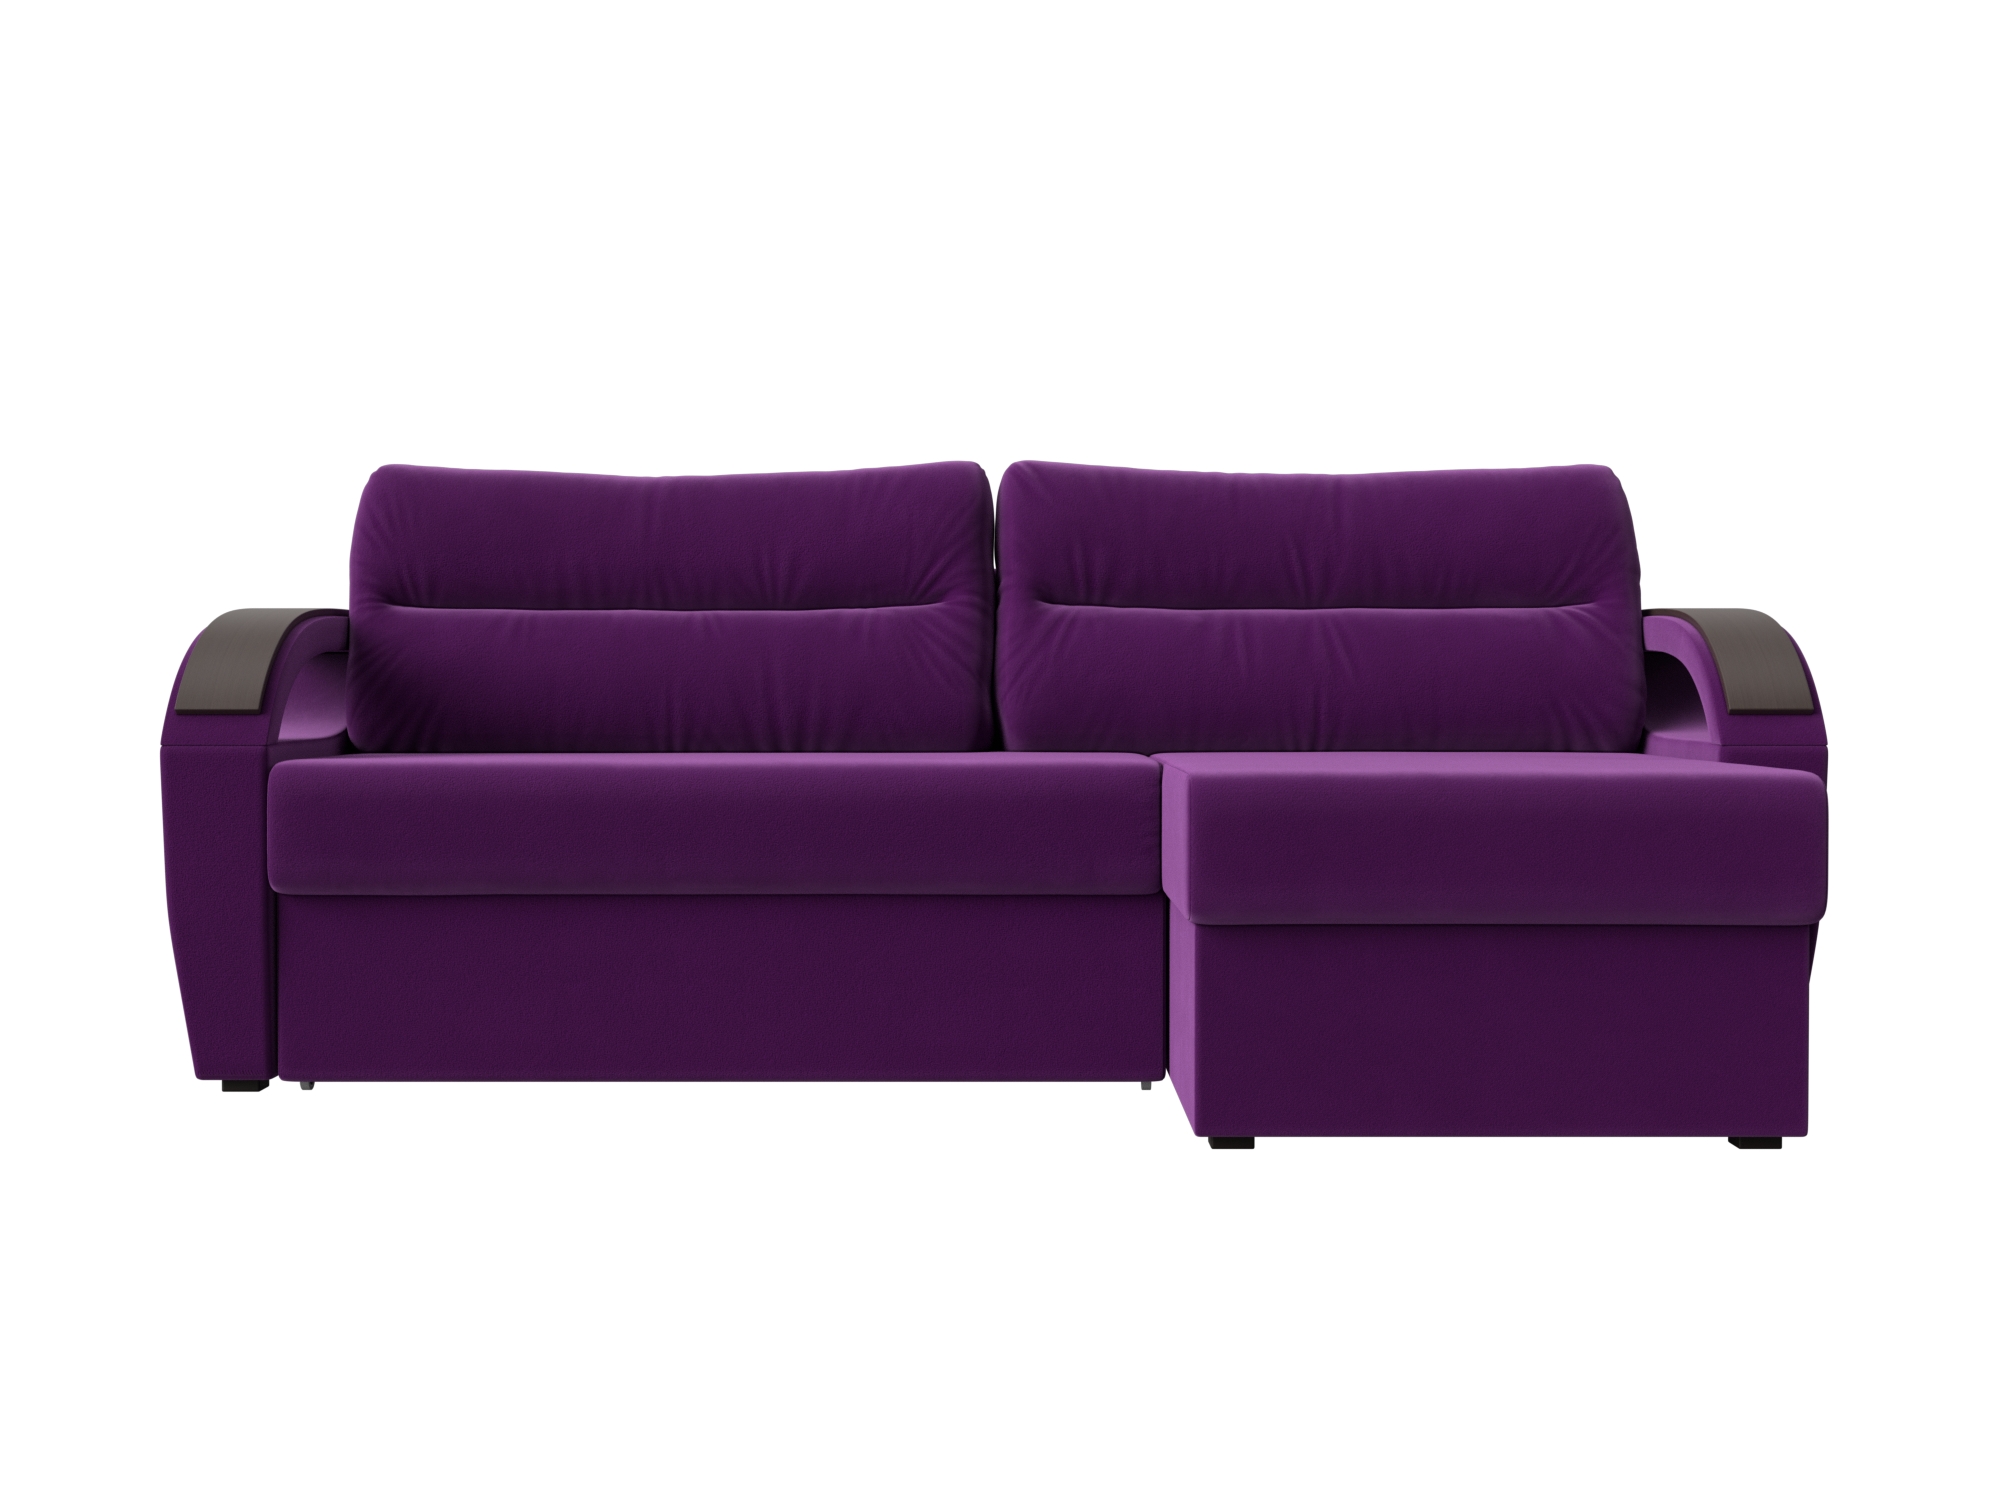 Угловой диван Форсайт Правый MebelVia , Фиолетовый, Микровельвет, ЛДСП диван угловой мебелико белла у микровельвет фиолетовый правый